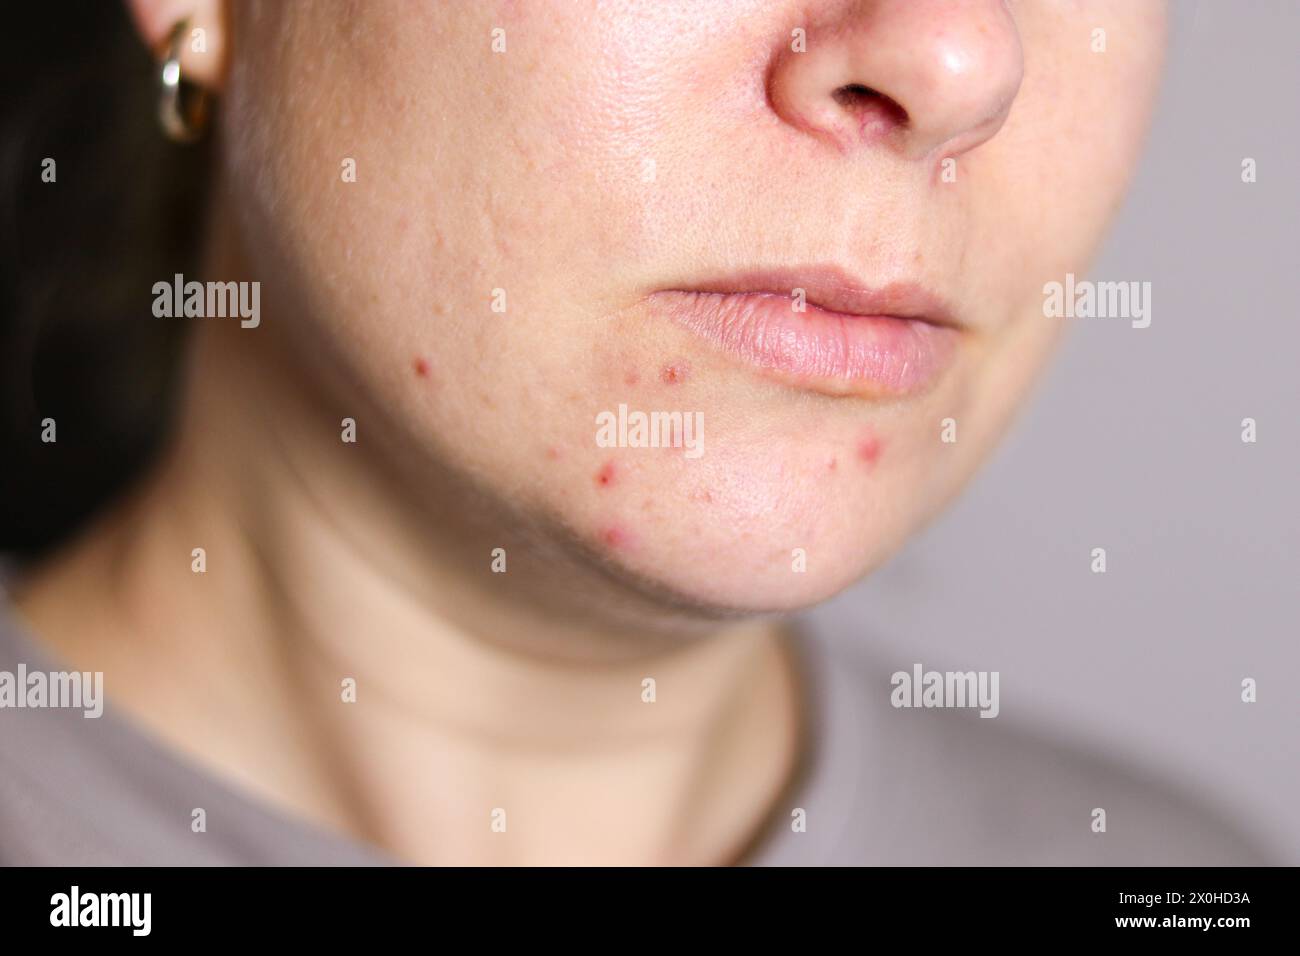 Nahaufnahme des weiblichen Gesichts mit roter problematischer Aknehaut, verschwommenem Hintergrund Stockfoto